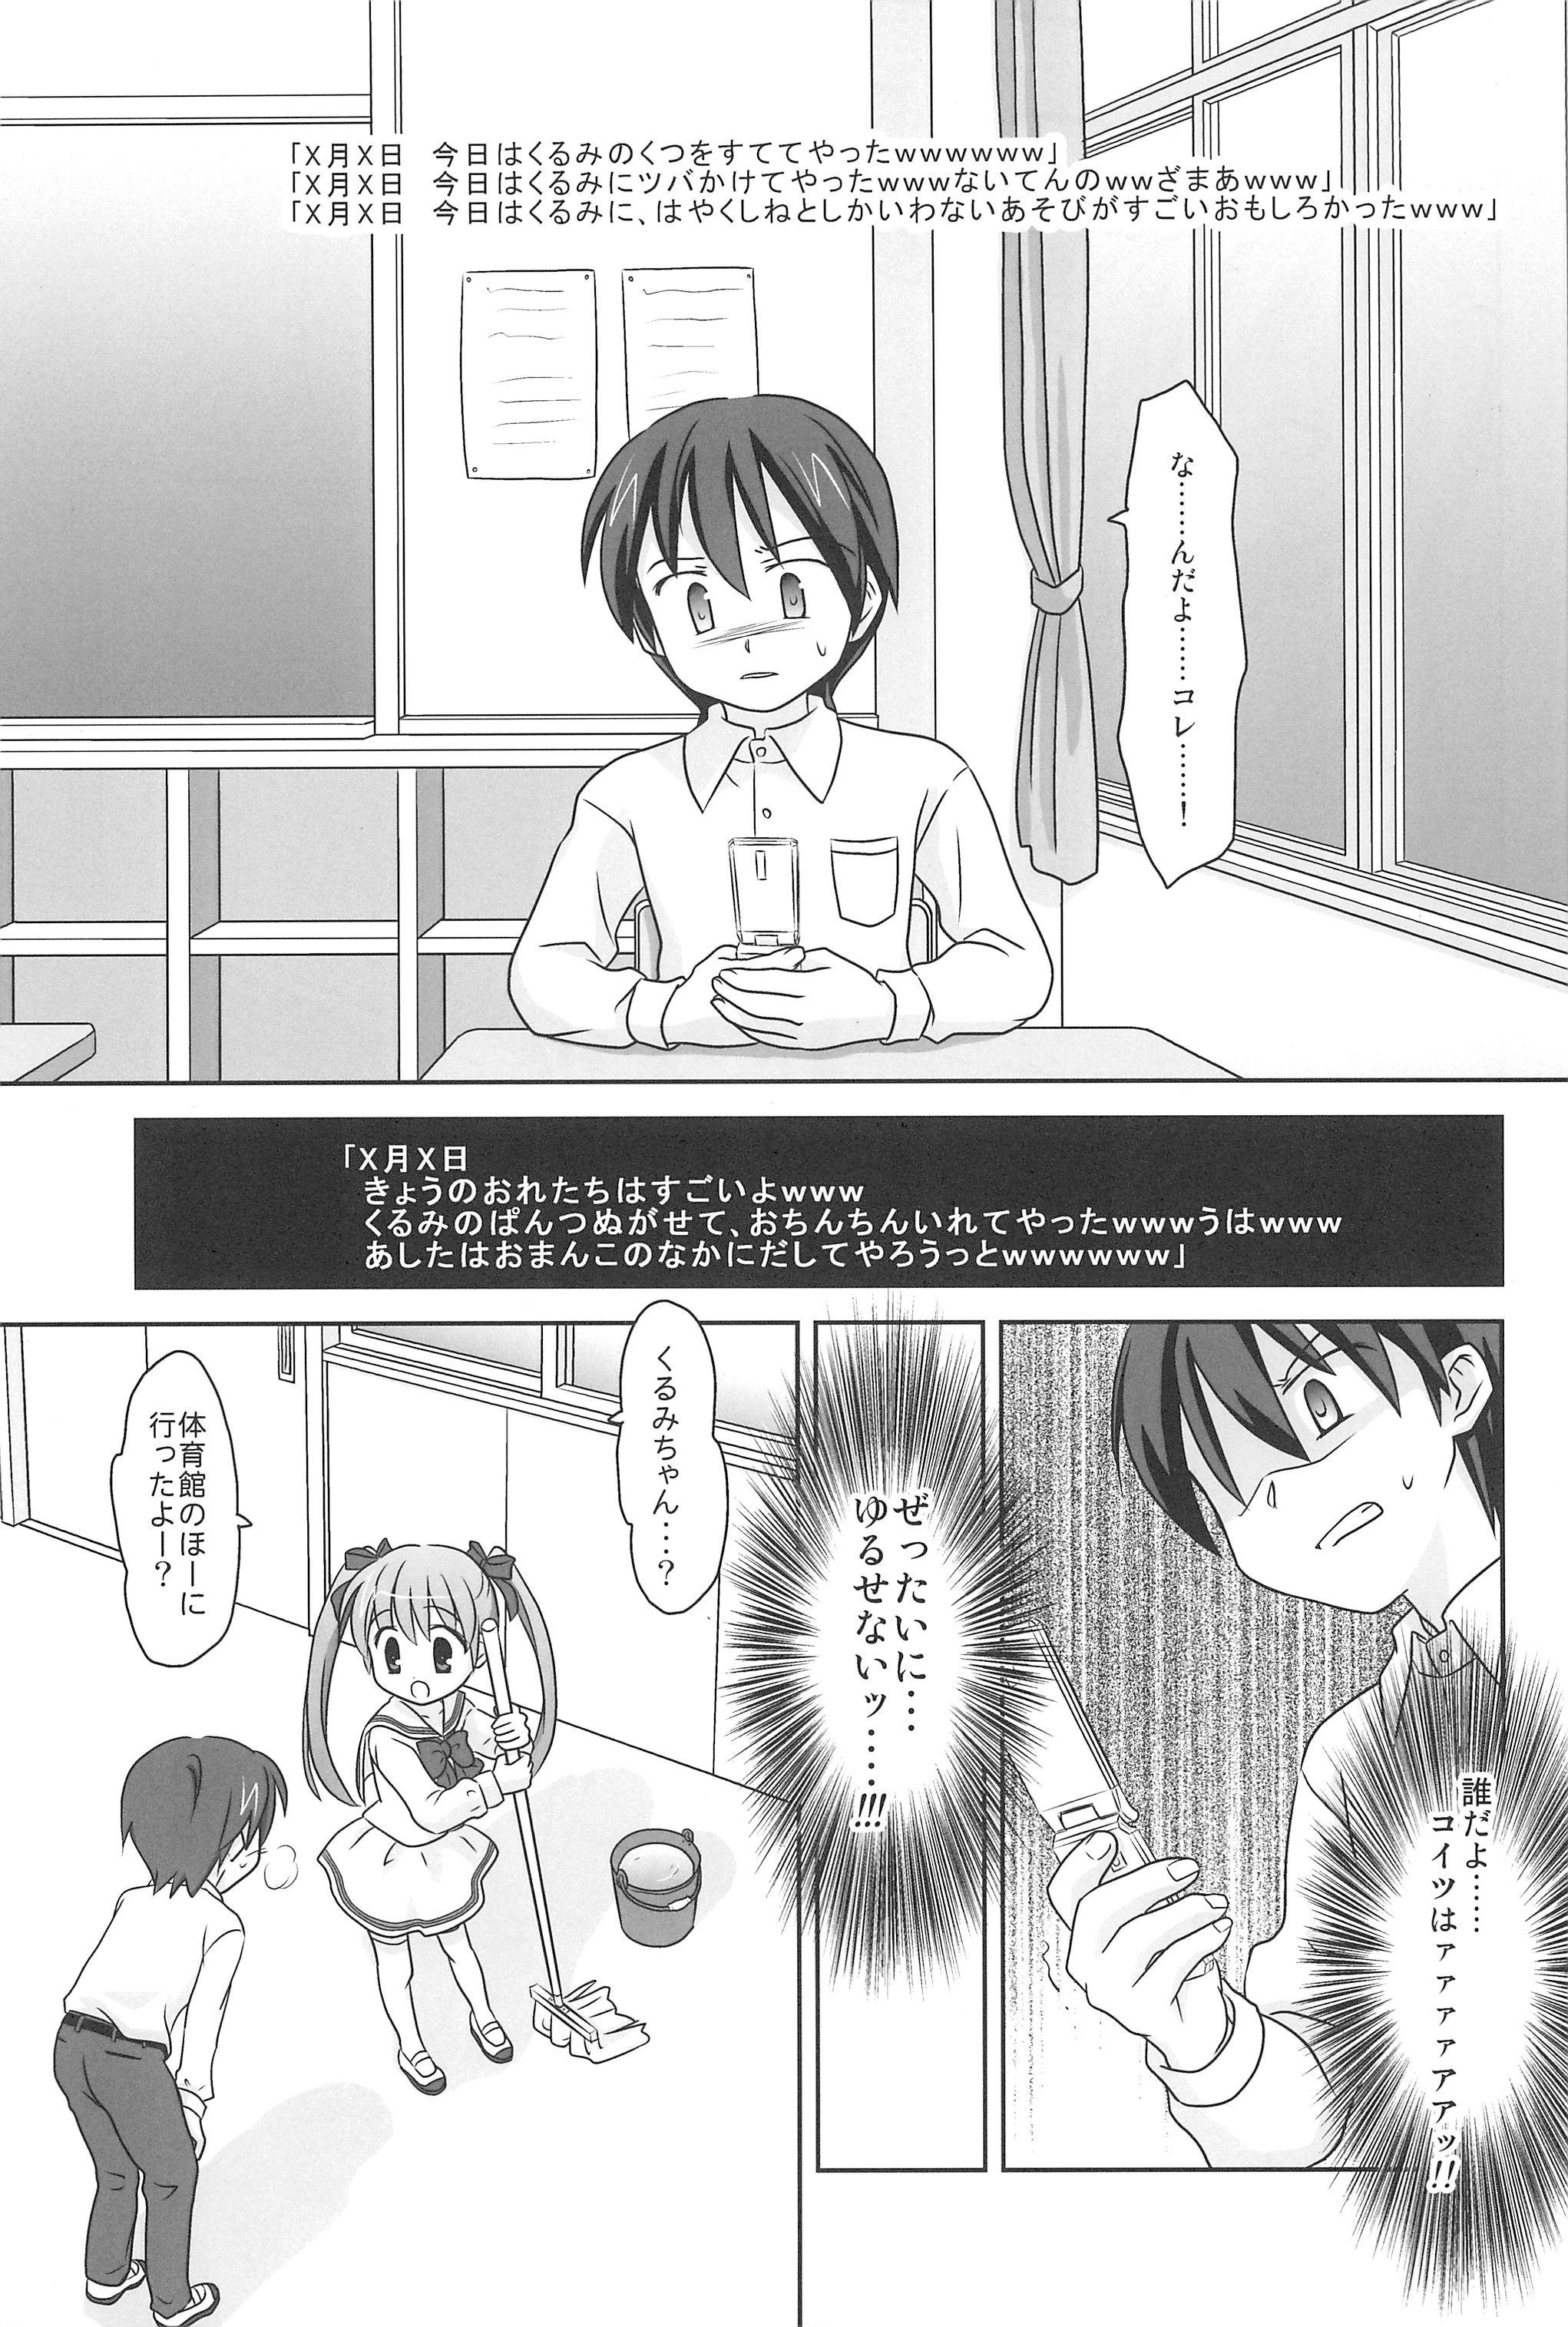 Doublepenetration Mazarashi no Hon 6 - Lolikko no Yatsu 3 Young Men - Page 5